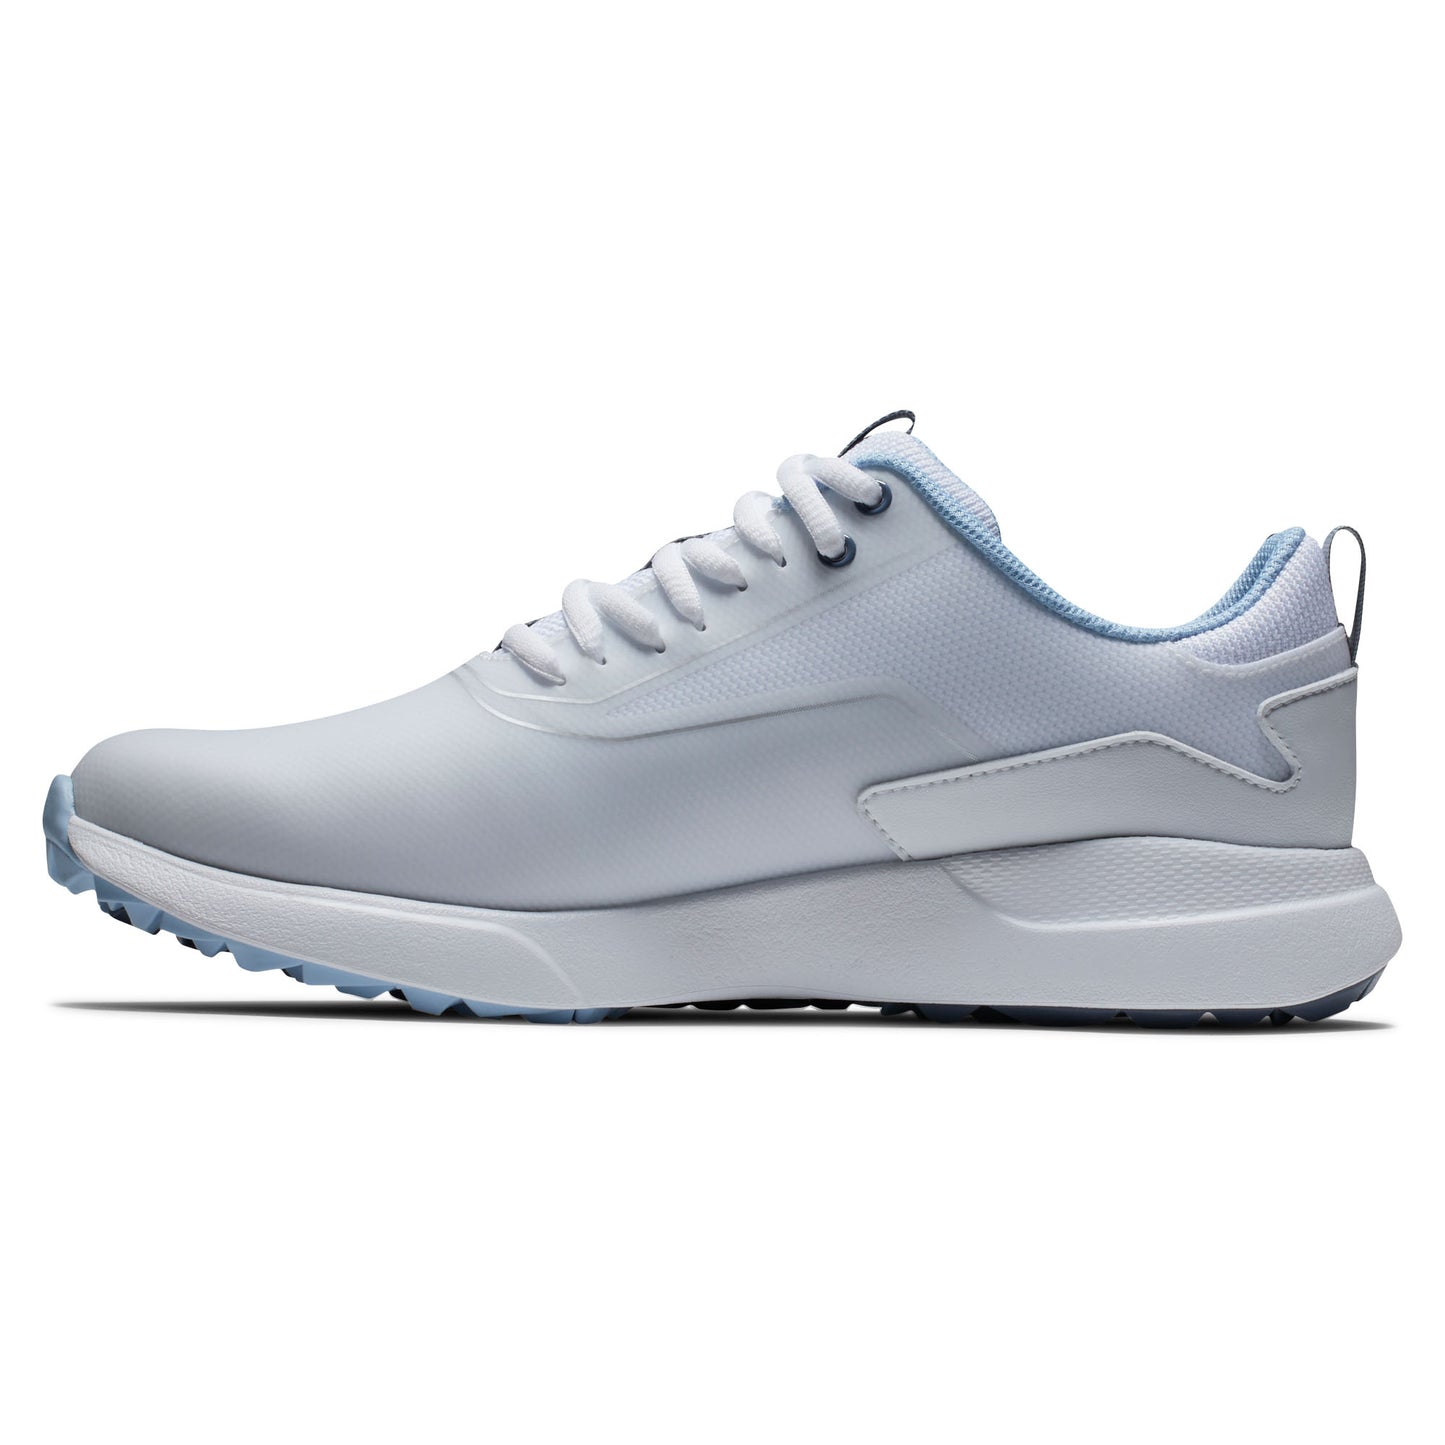 FootJoy Ladies Performa Spikeless Waterproof Golf Shoes in White & Blue